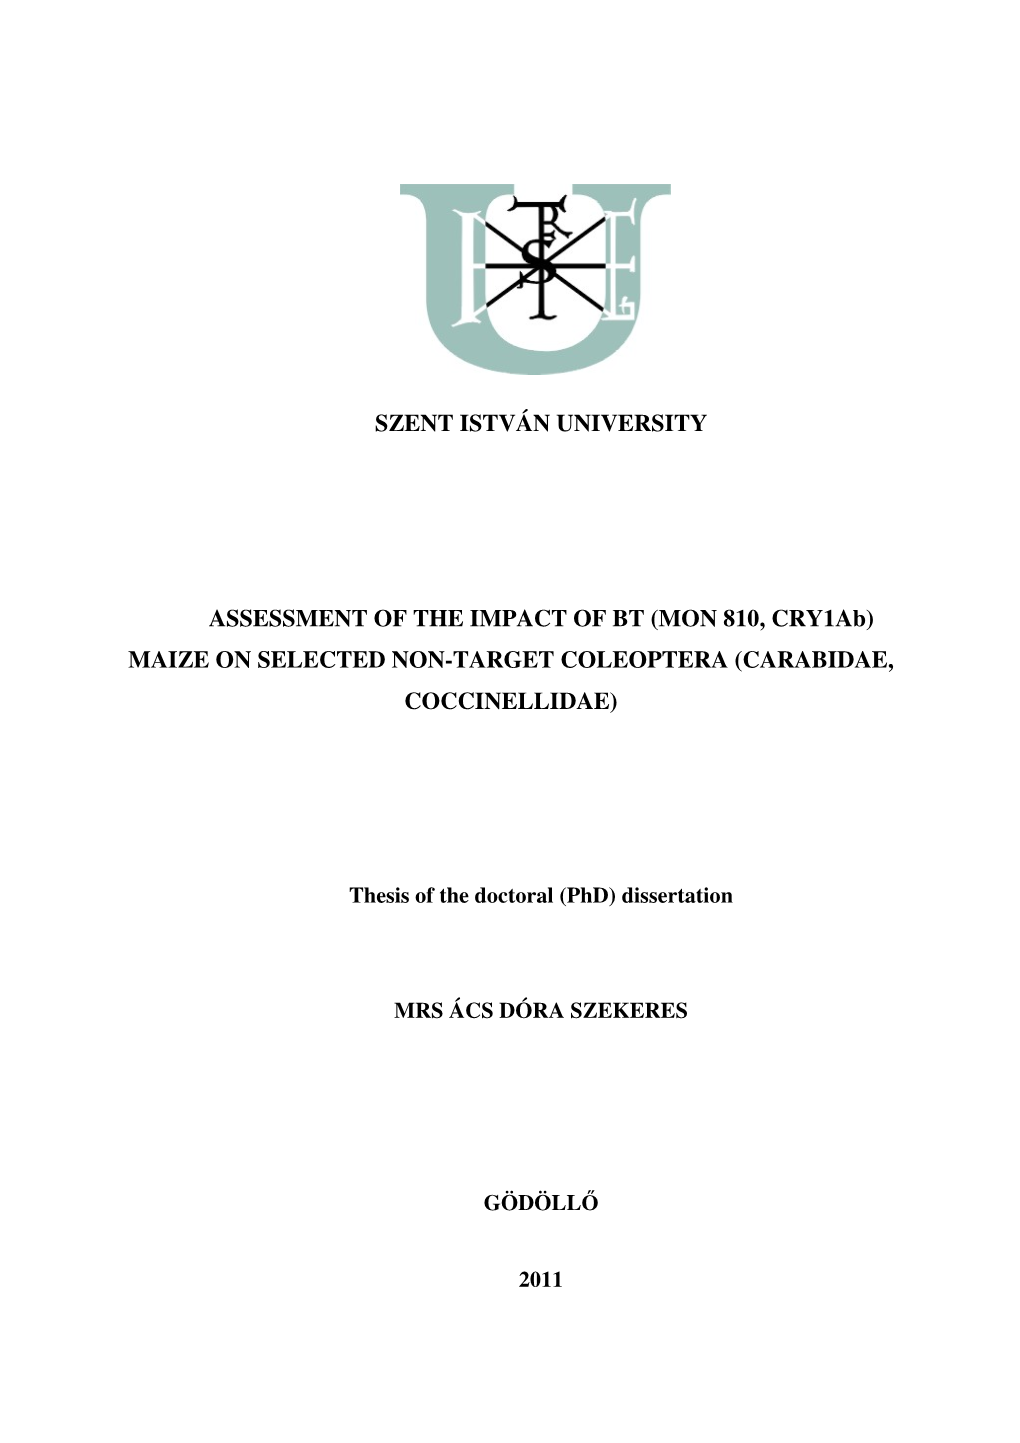 Szent István University Assessment of the Impact Of